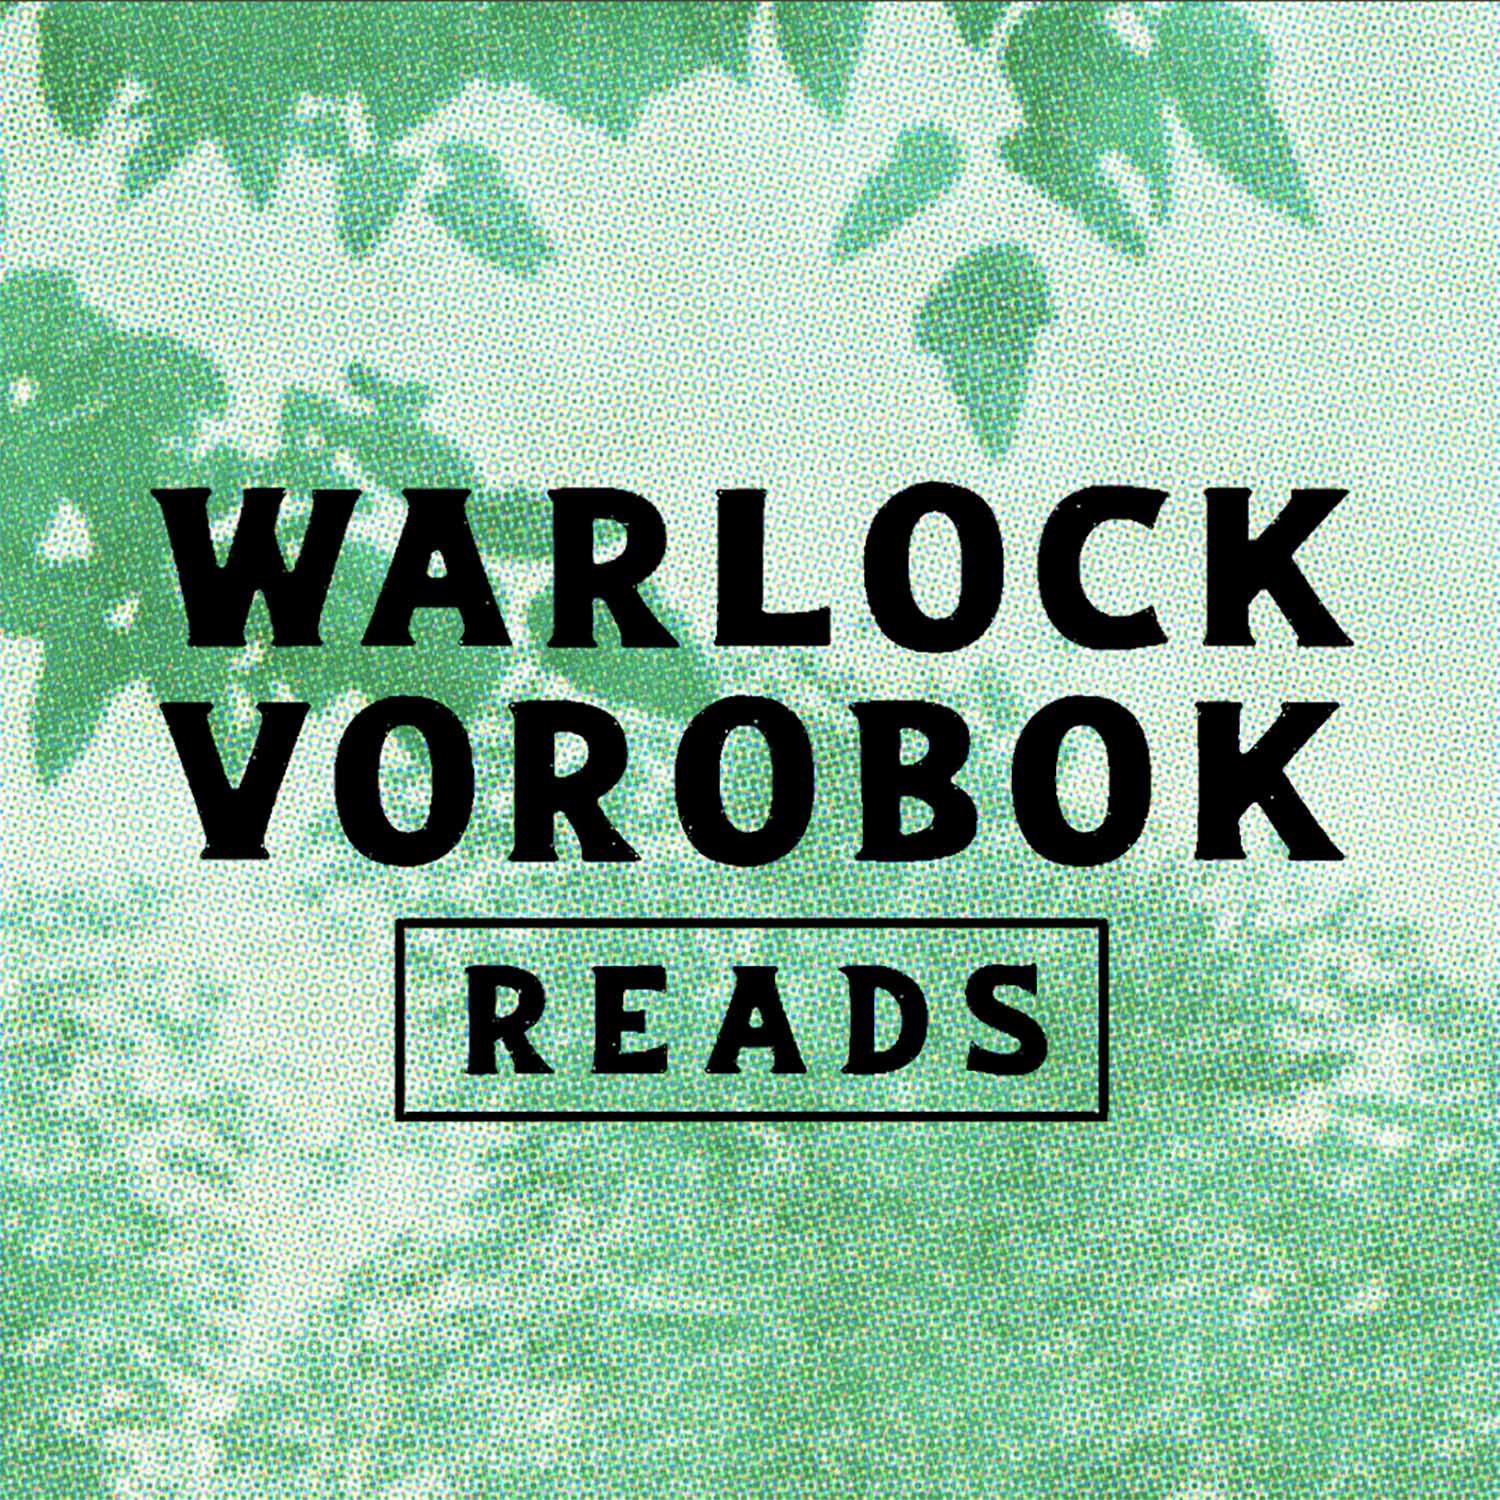 Artwork for Warlock Vorobok Reads